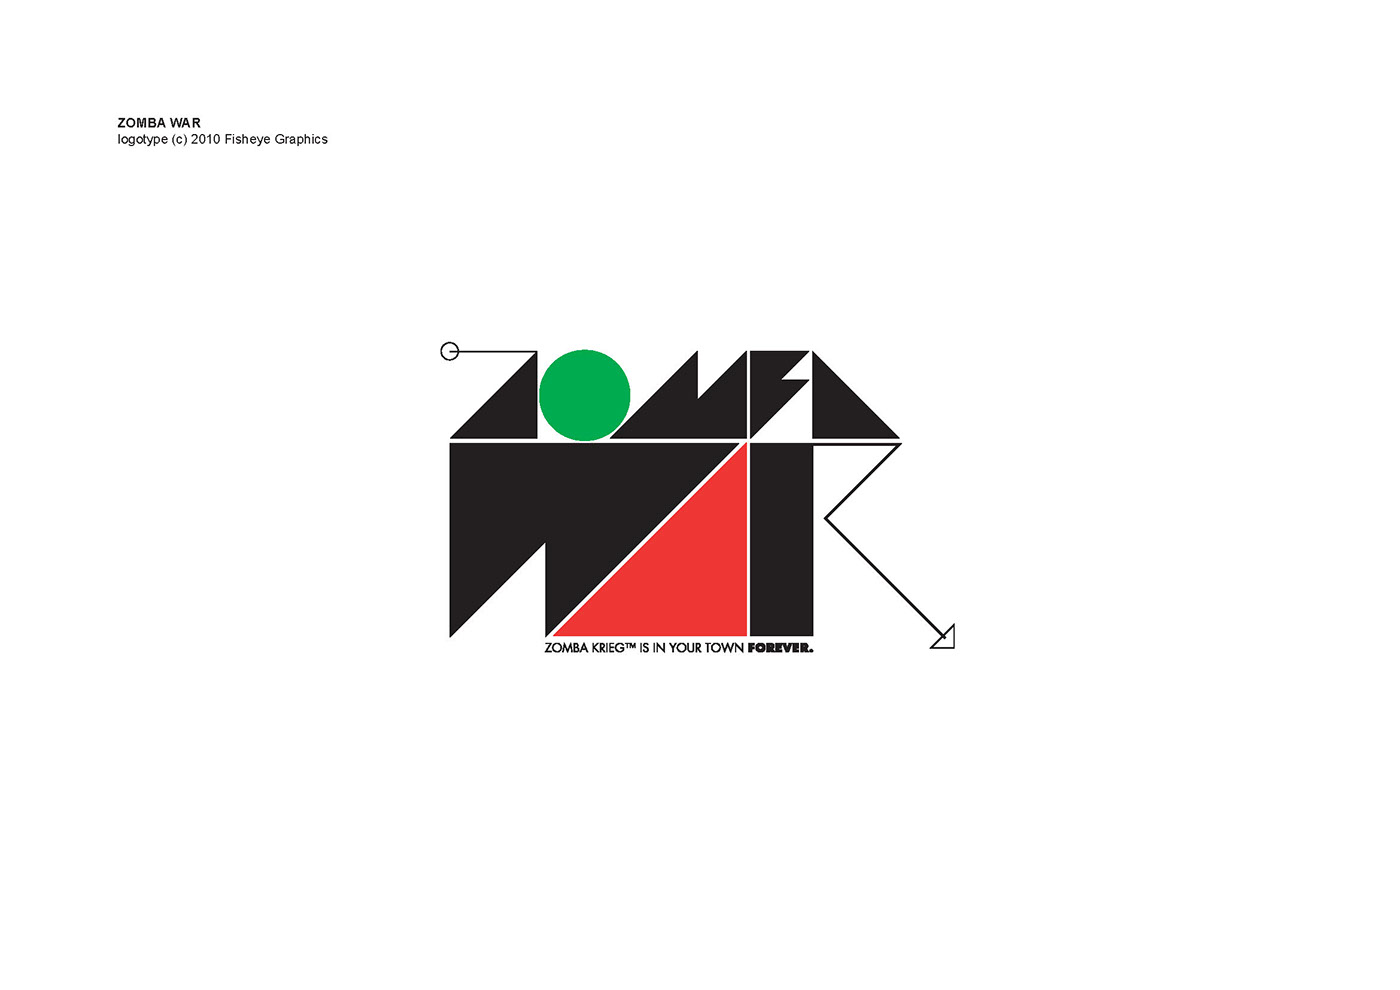 alain tshinza Alpha toshineza graphic design luxembourg Logotype